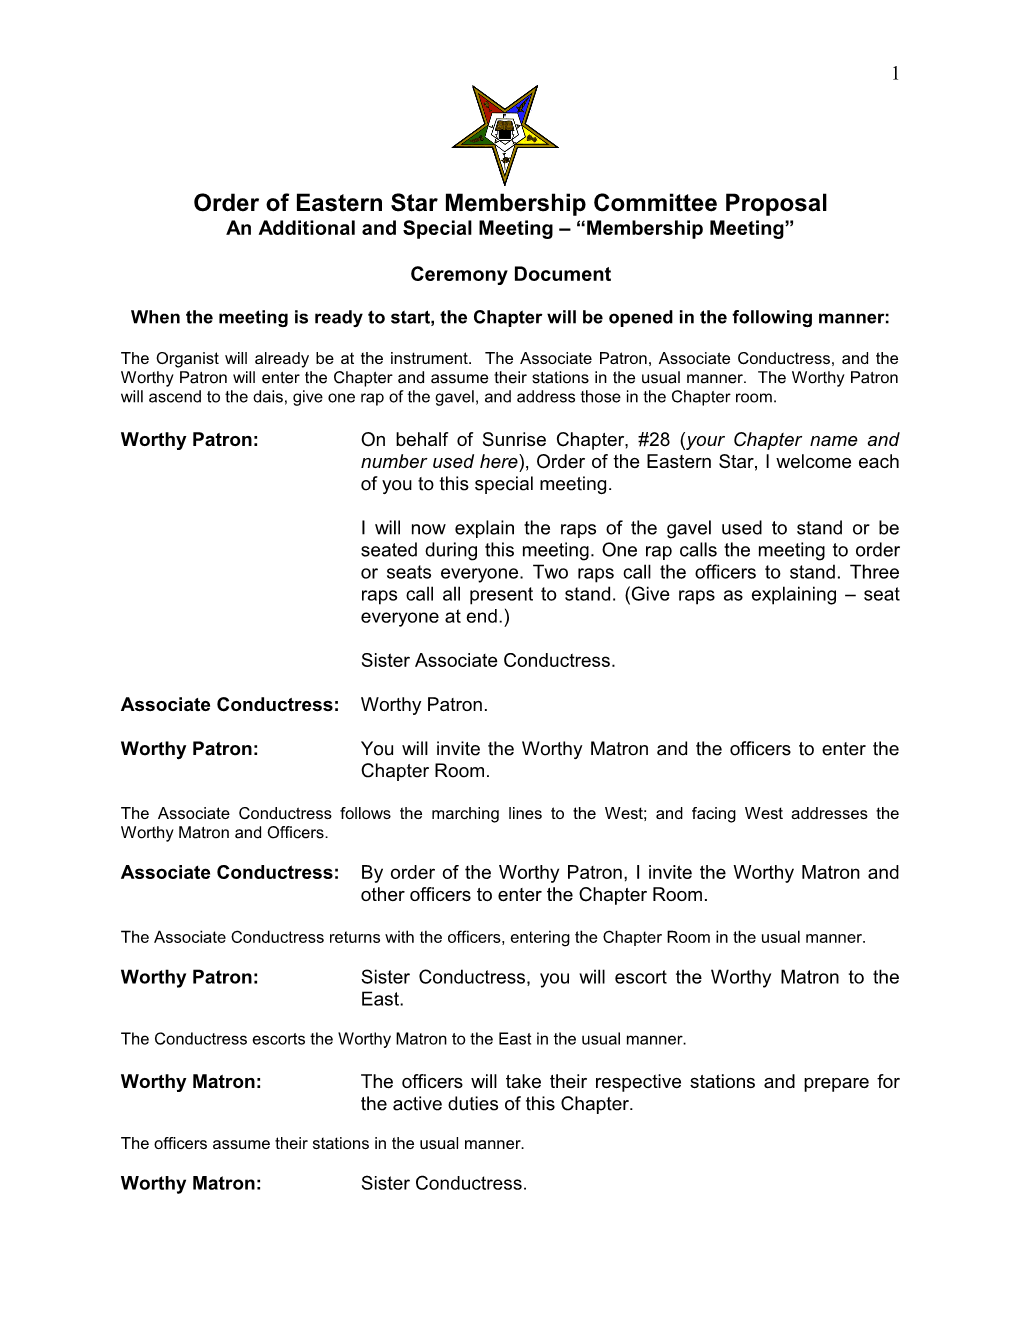 Order of Eastern Star Membership Committee Proposal